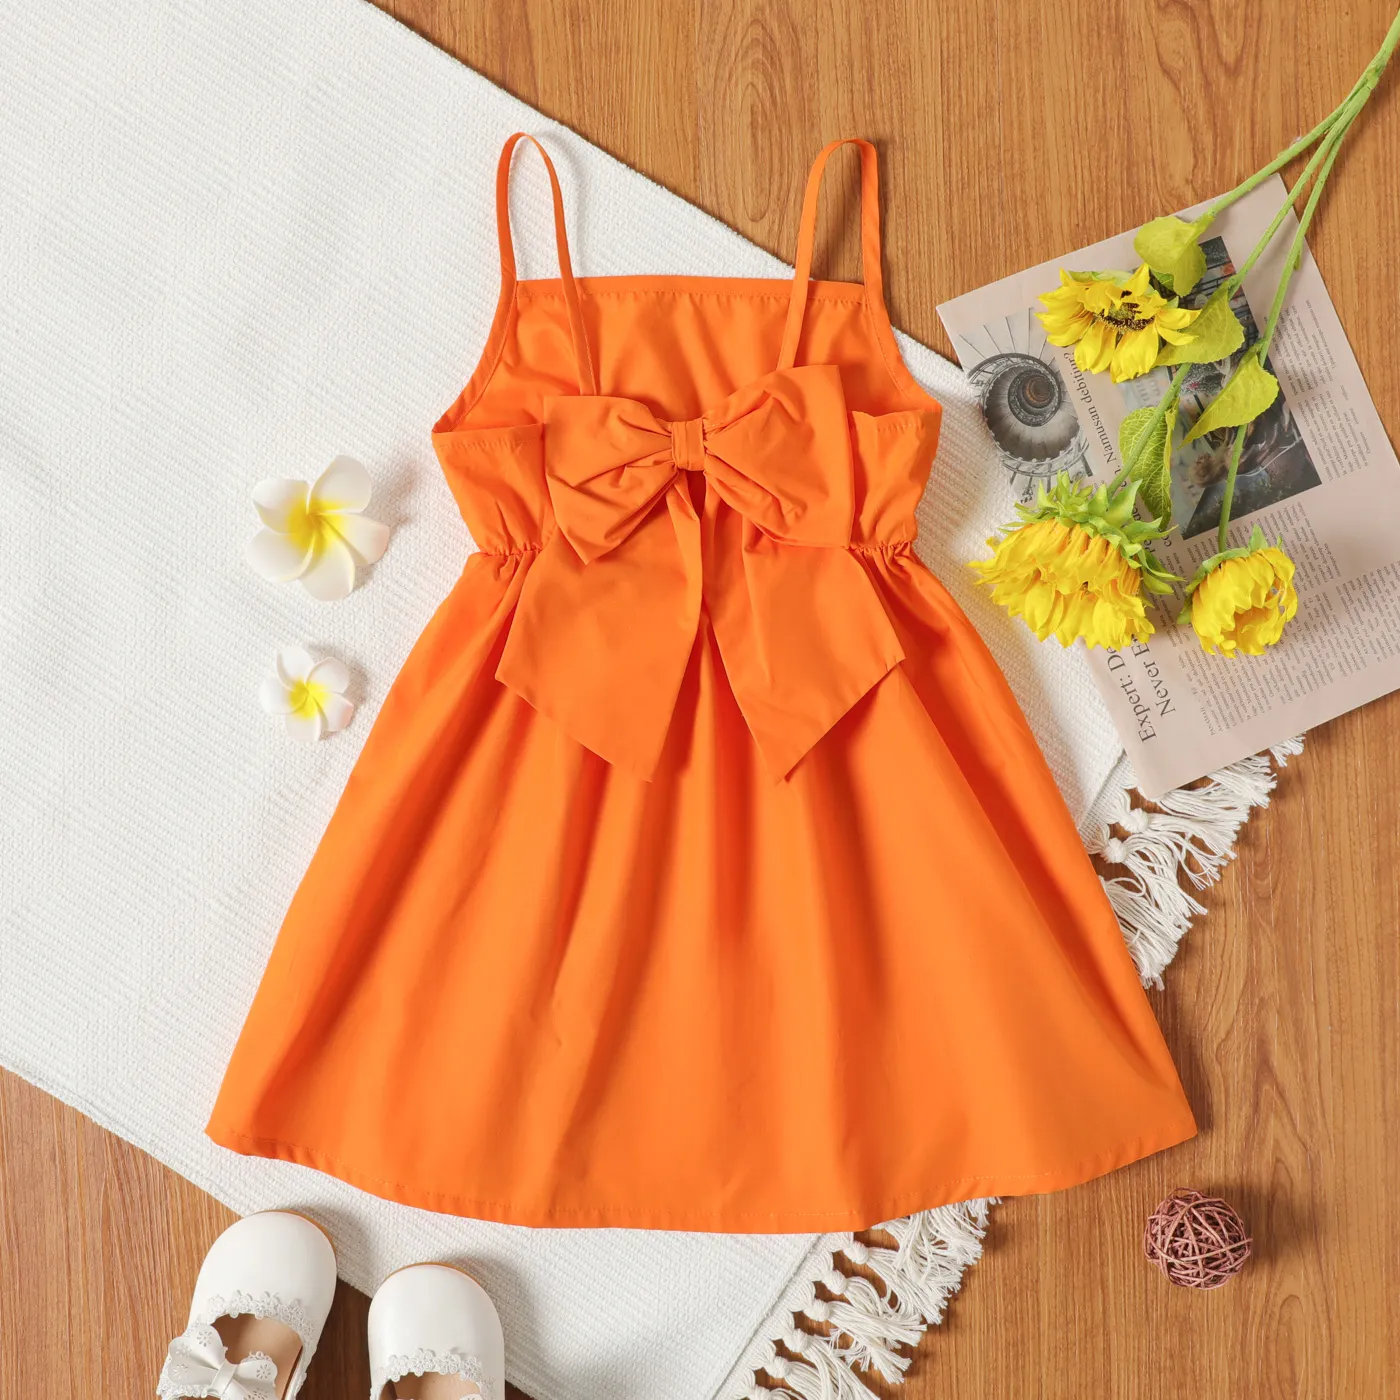 Enfant En Bas âge Fille Bowknot Design Imprimé Floral/robe Slip Orange